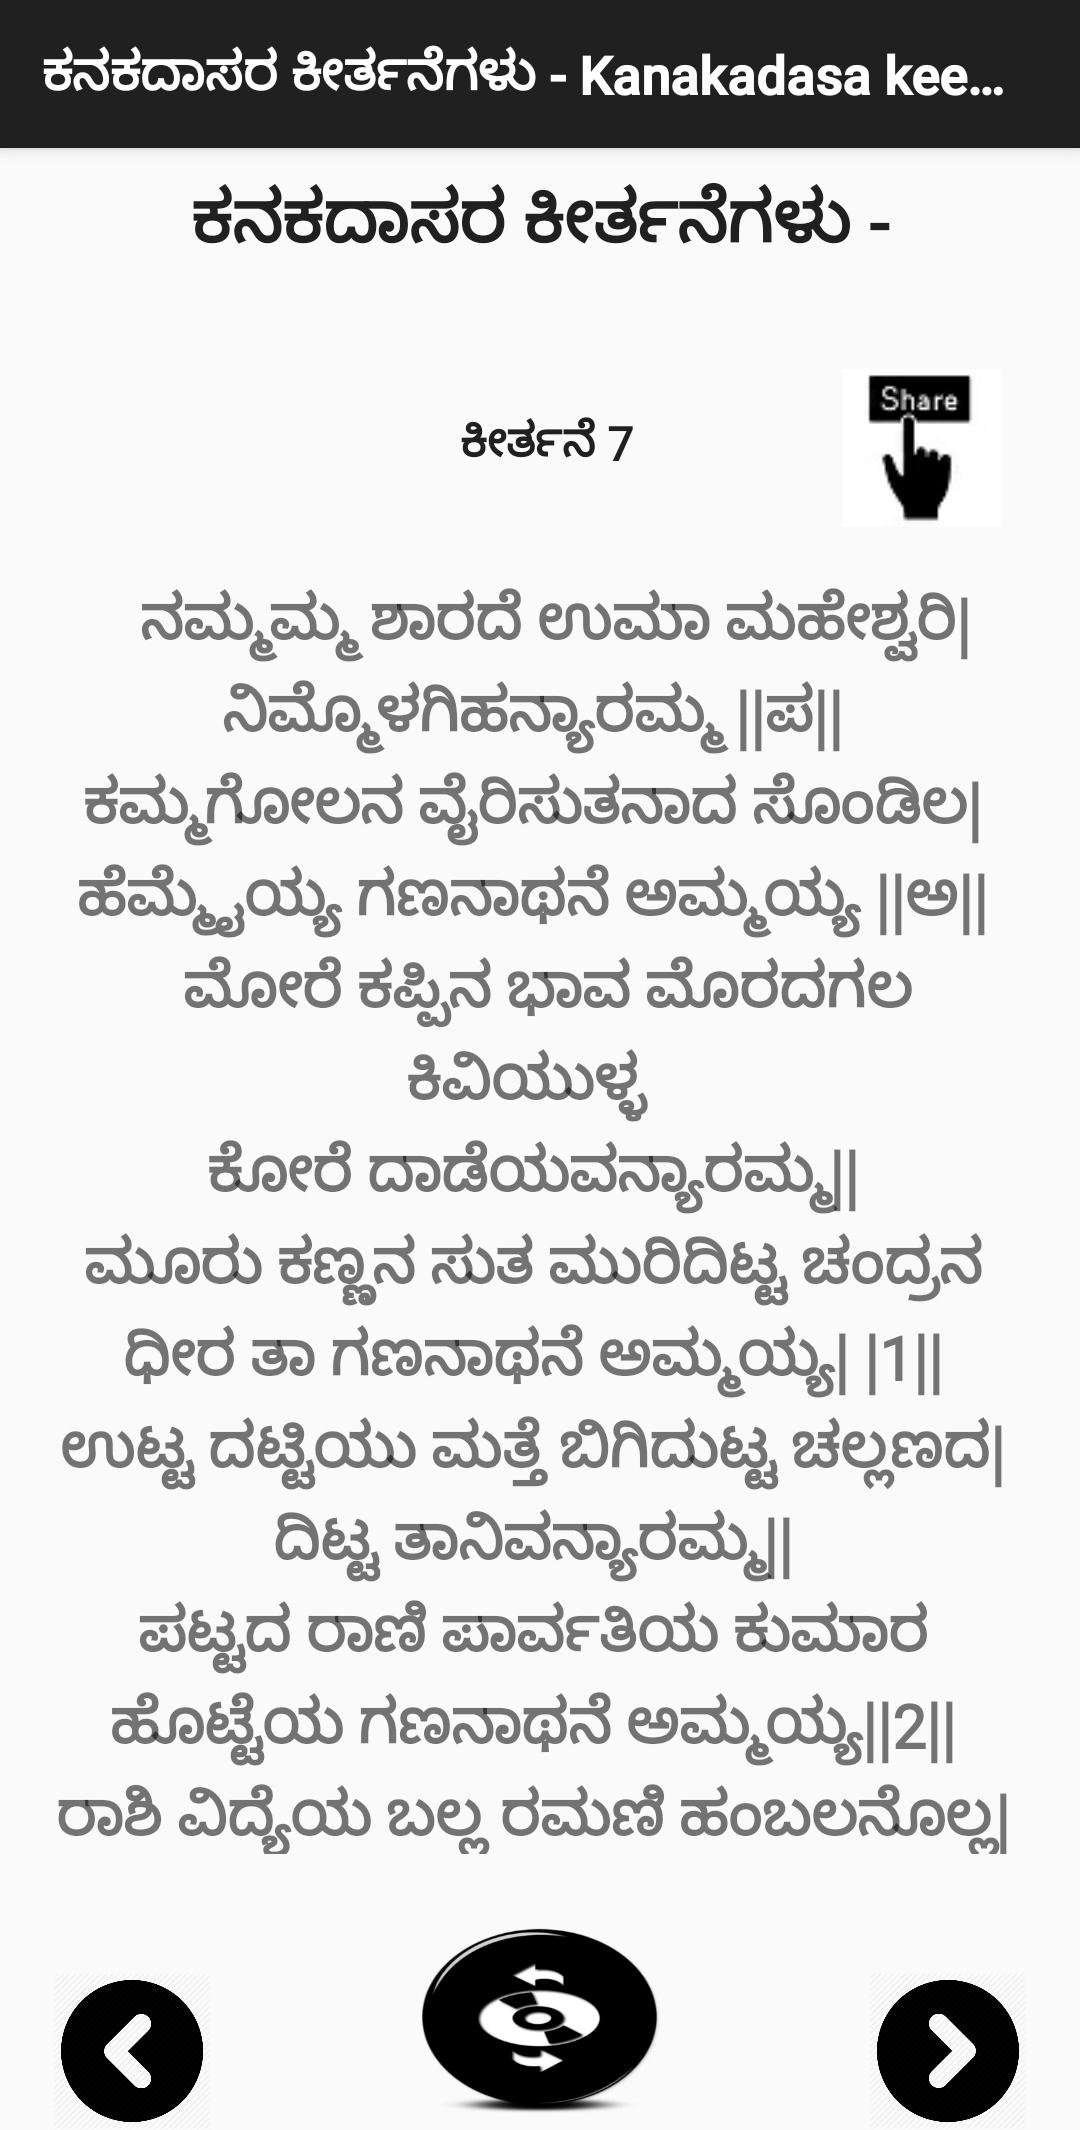 ಕನಕದಾಸರ ಕೀರ್ತನೆಗಳು - Kanakadasa Keerthane songs 3.0 Screenshot 4